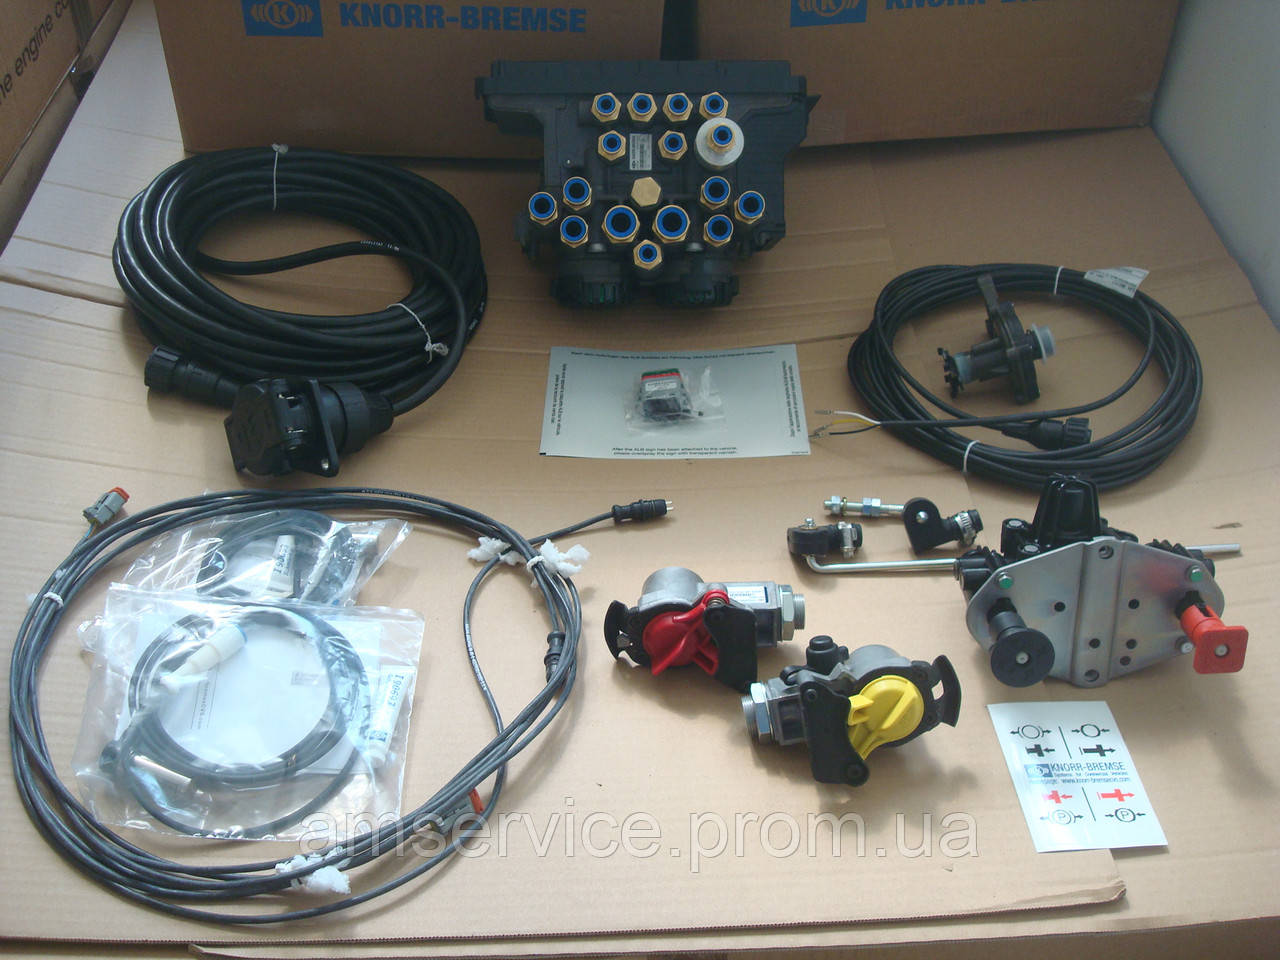 Электронная тормозная система TEBS для рессорных прицепов, Knorr-Bremse, фото 1